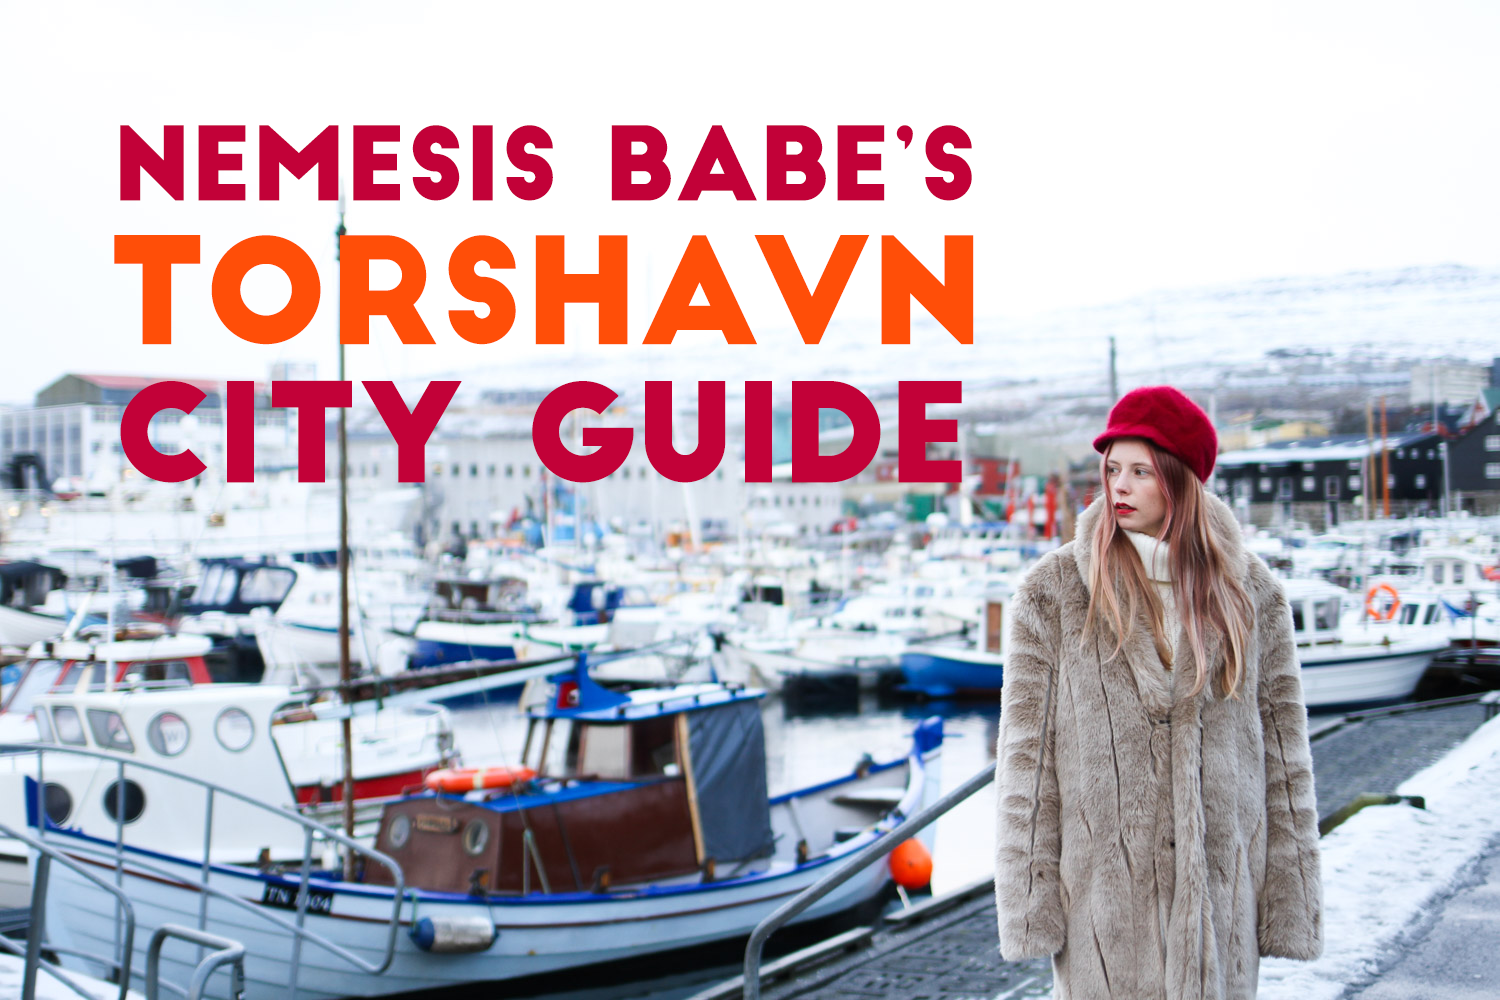 My Torshavn city guide